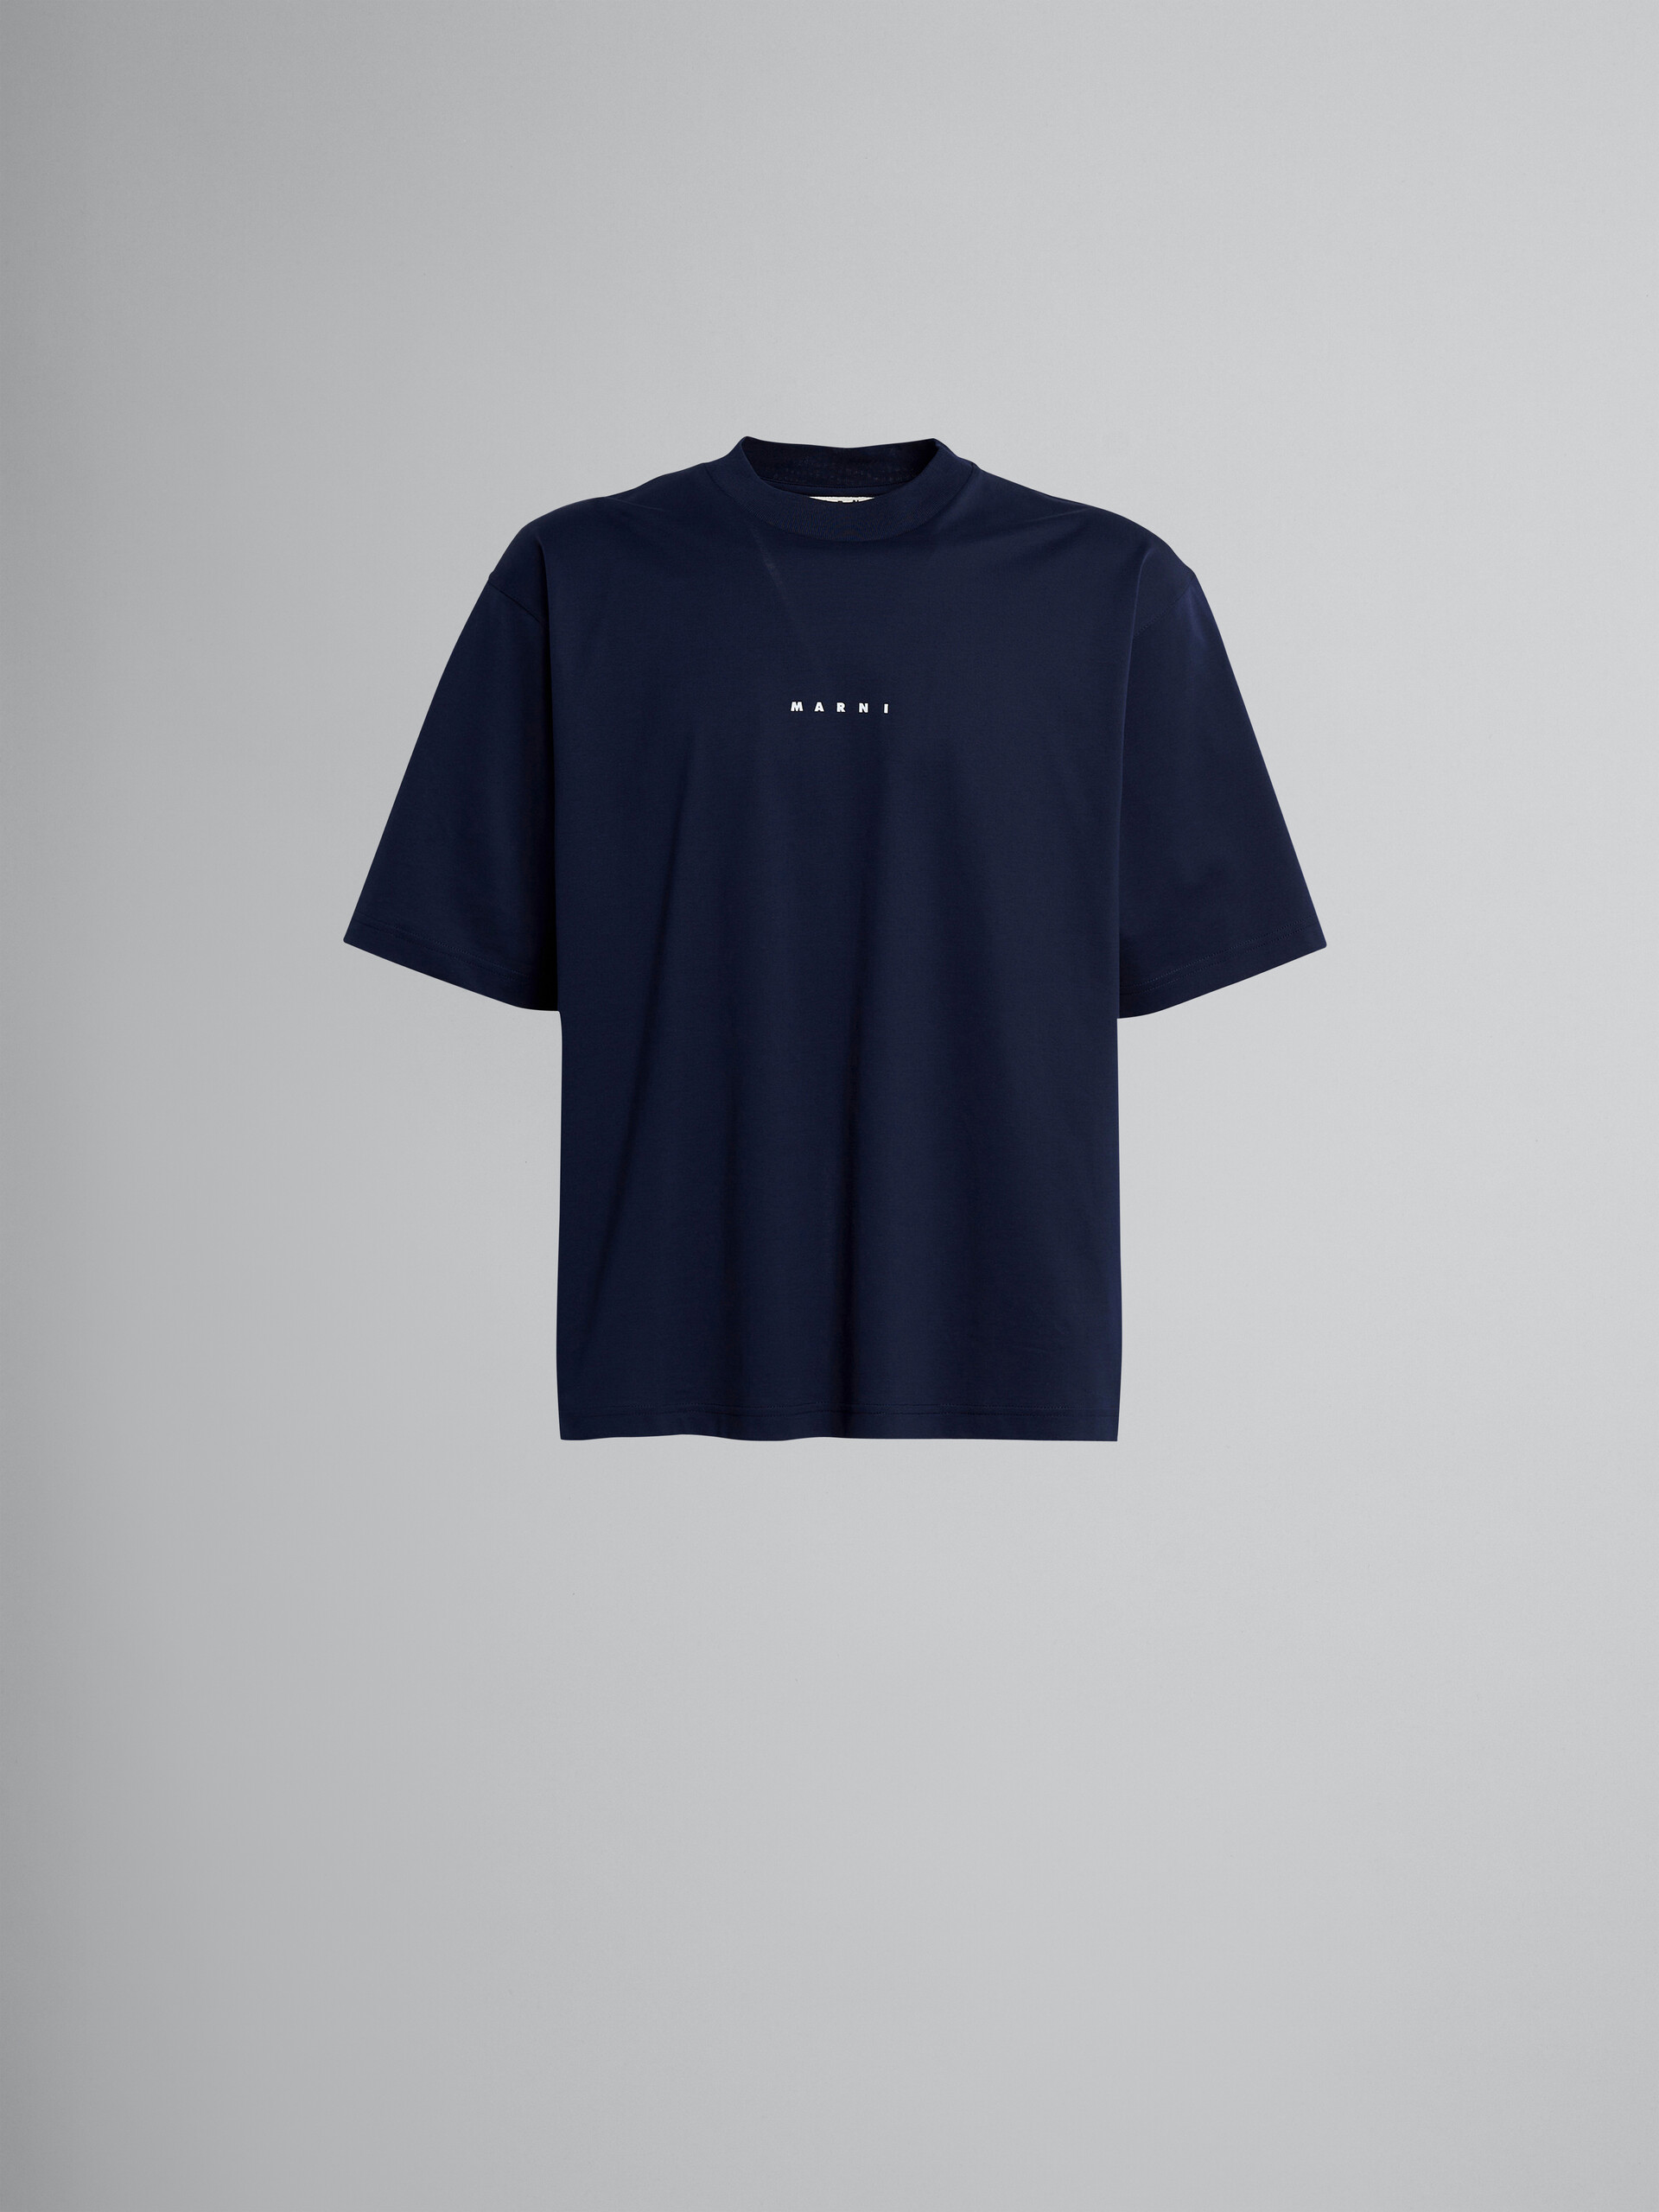 블랙 로고 티셔츠 - 티셔츠 - Image 1